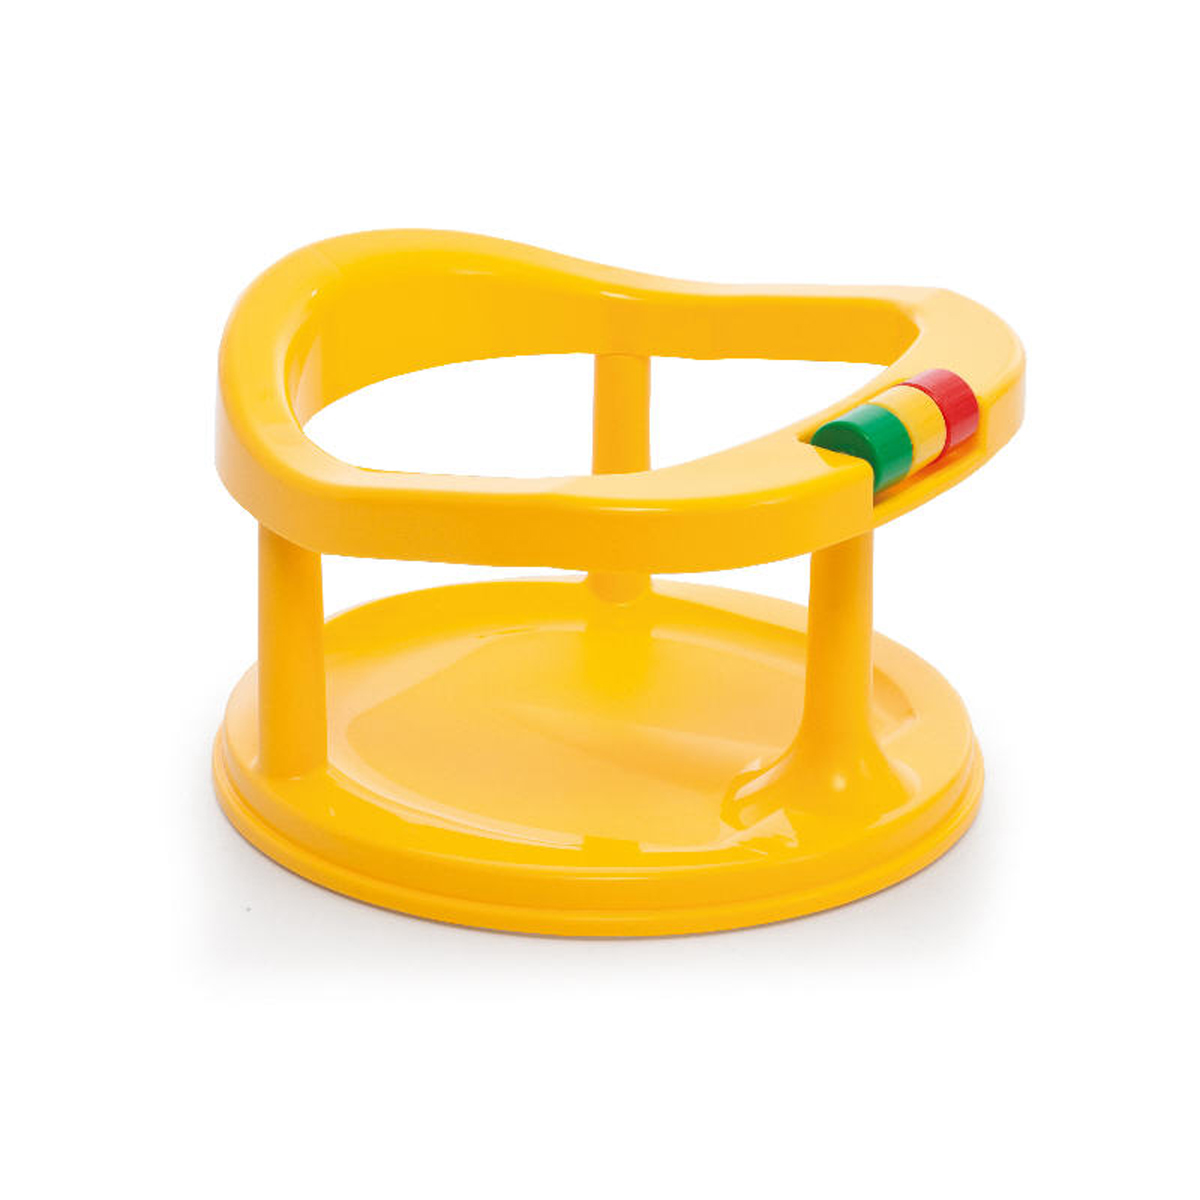 стульчик для купания в детском мире